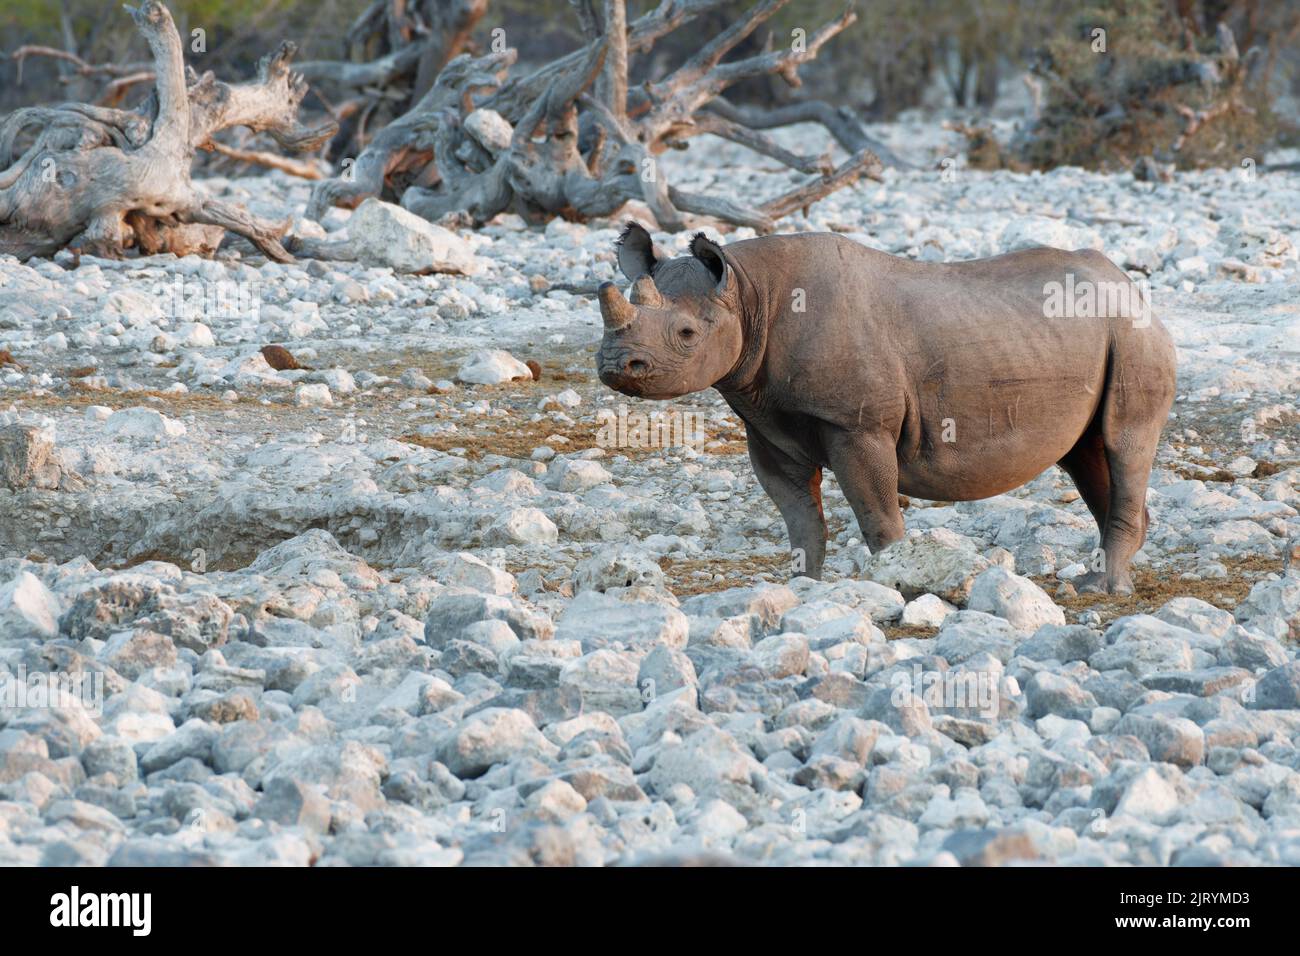 Rhinocéros noirs (Diceros bicornis) avec cornes sciées, mesure anti-braconnage, adulte au trou d'eau, alerte, lumière du soir, Parc national d'Etosha, Namib Banque D'Images